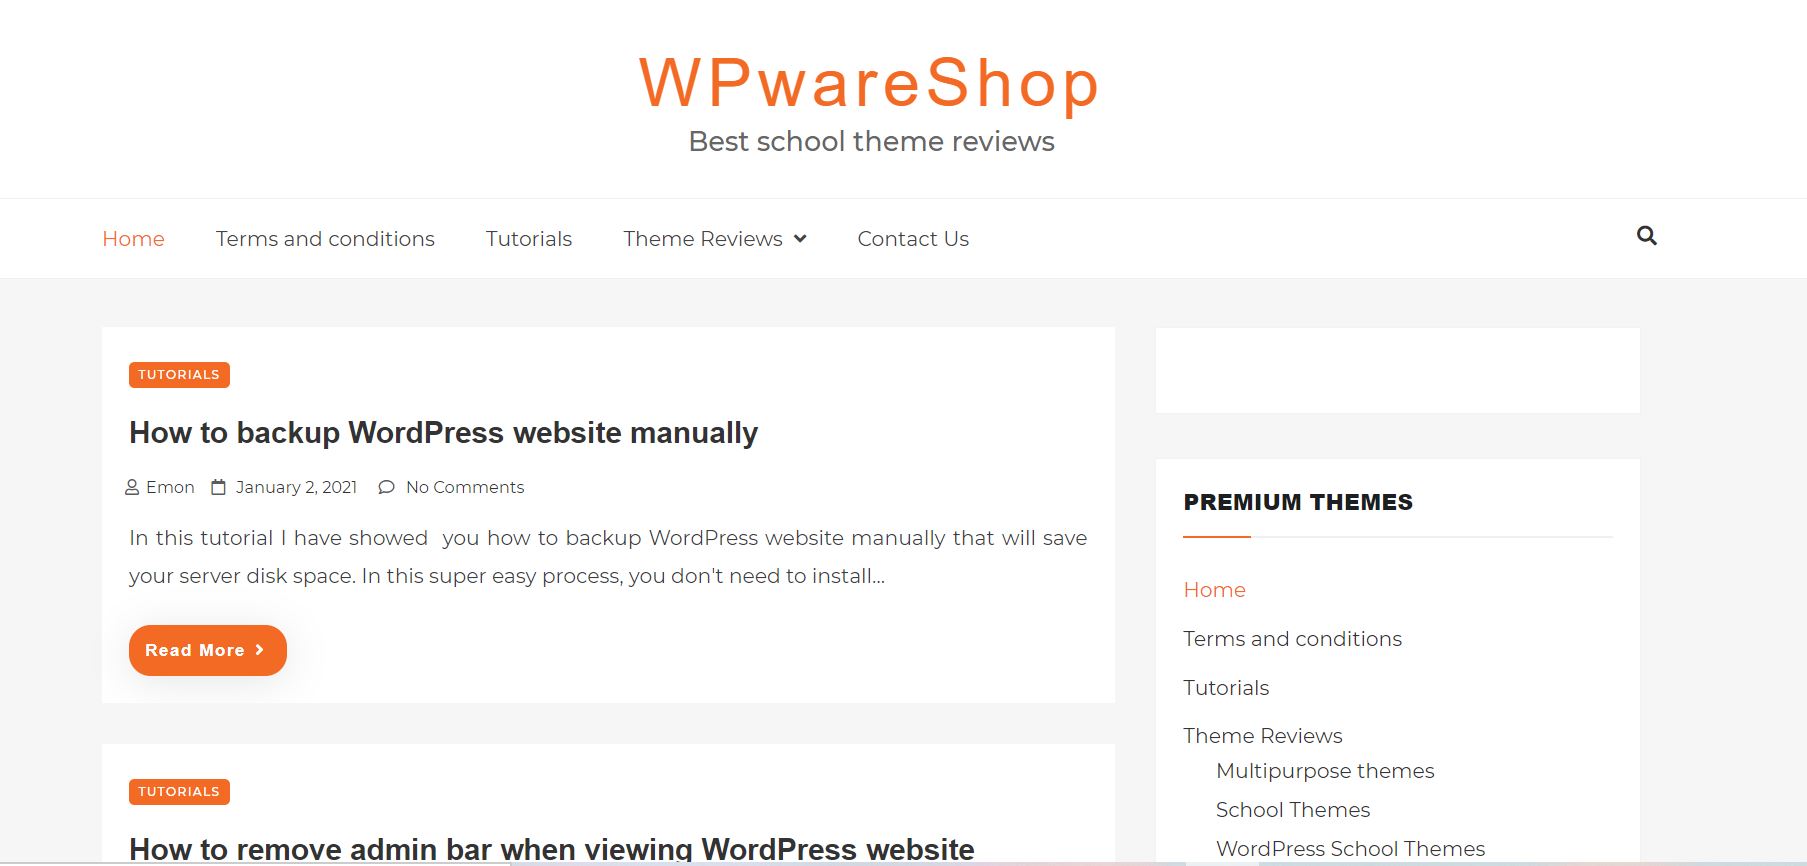 WPwareShop